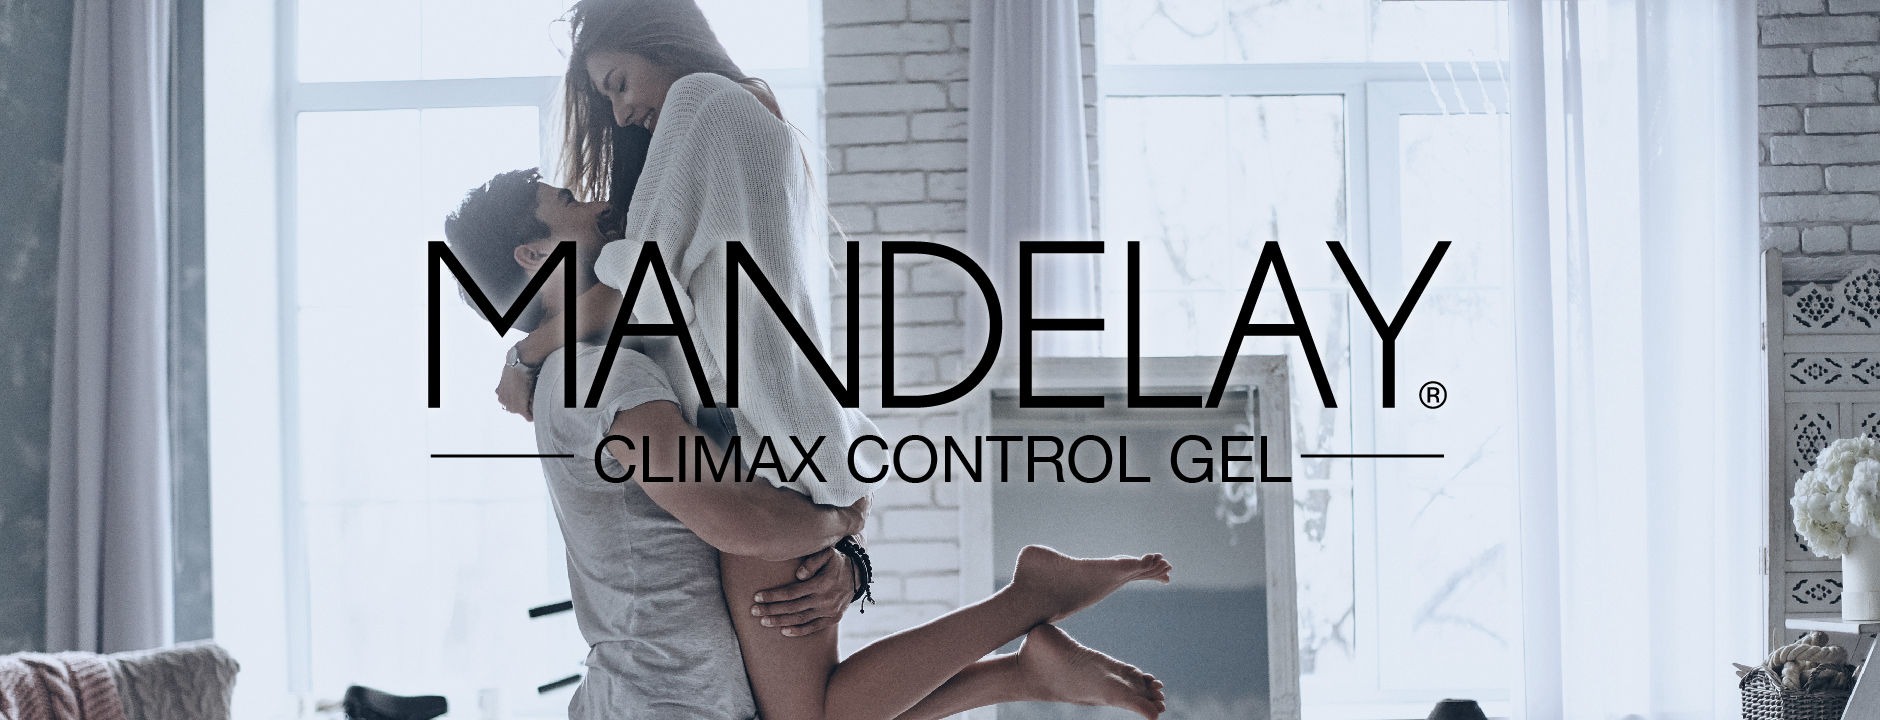 Mandelay Climax Control Gel